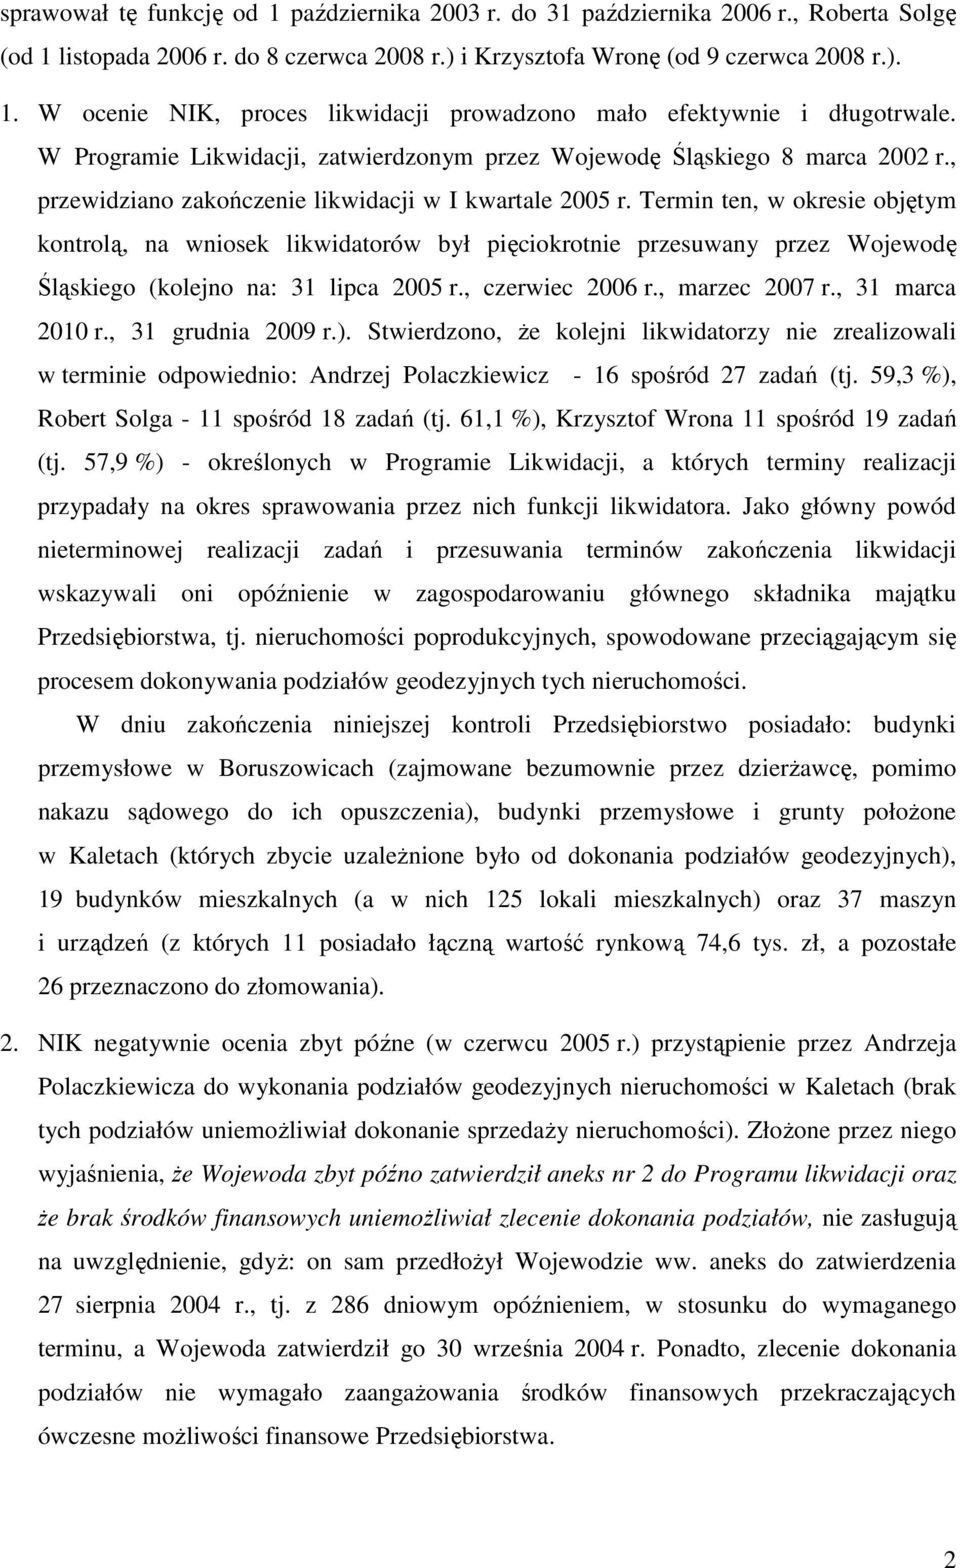 Termin ten, w okresie objętym kontrolą, na wniosek likwidatorów był pięciokrotnie przesuwany przez Wojewodę Śląskiego (kolejno na: 31 lipca 2005 r., czerwiec 2006 r., marzec 2007 r., 31 marca 2010 r.